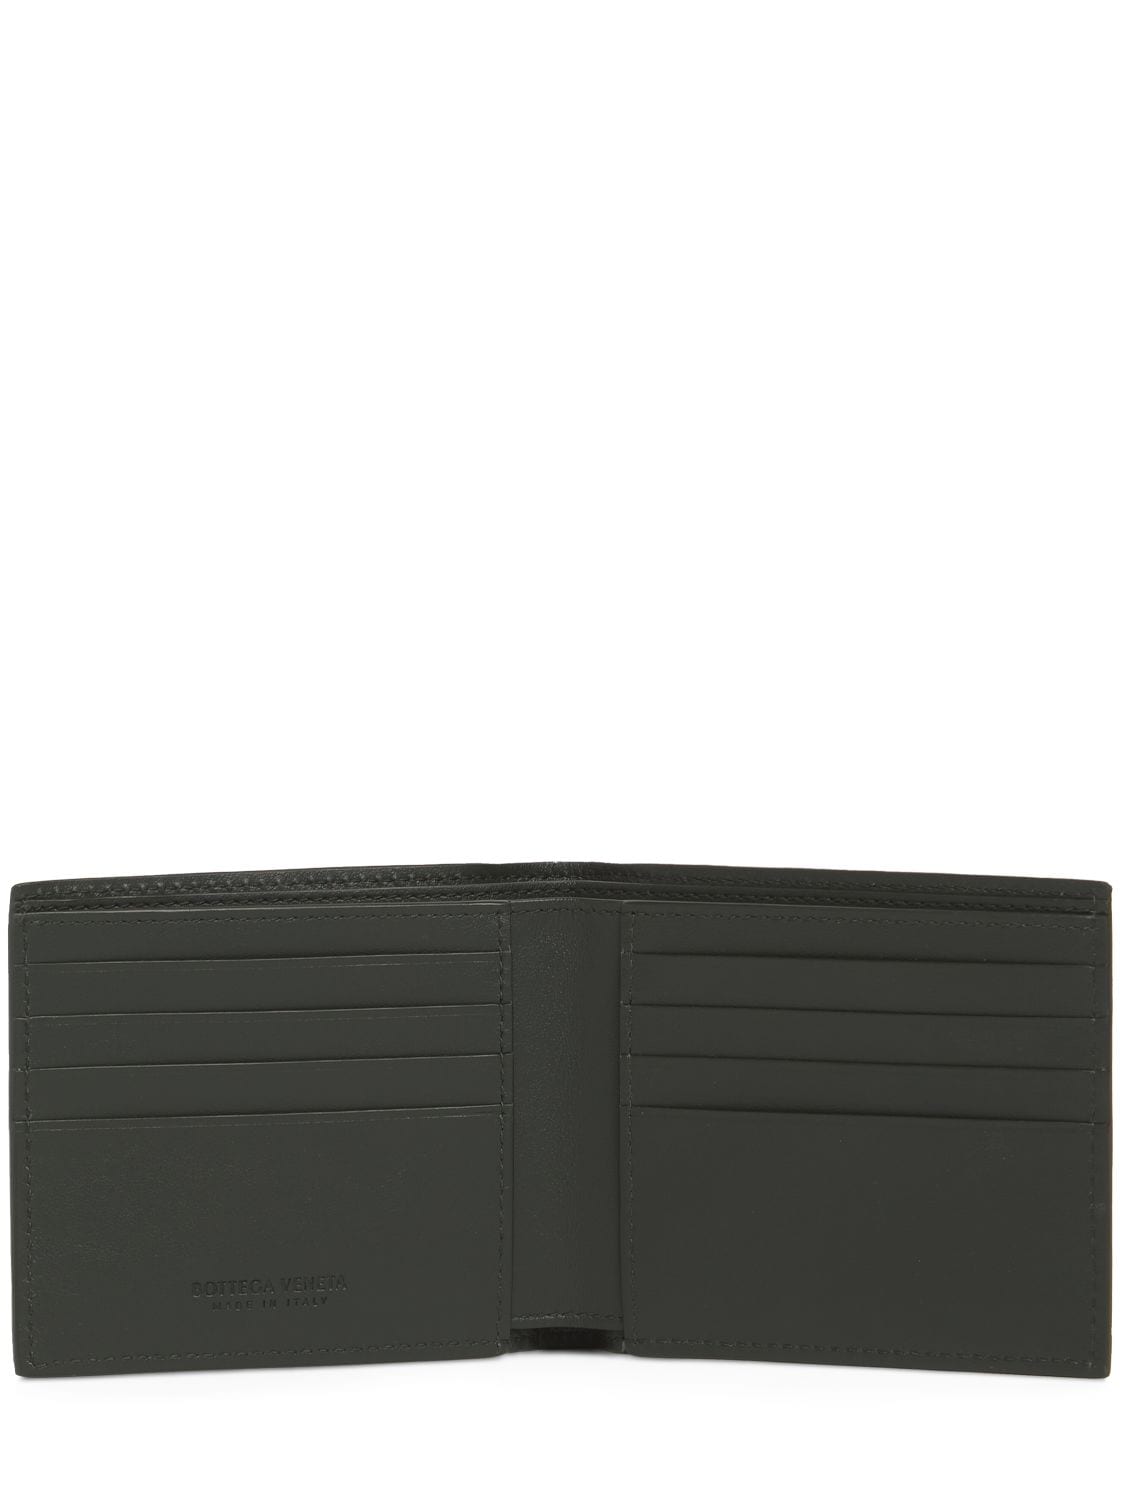 Shop Bottega Veneta Intrecciato Leather Bi-fold Wallet In Dark Green